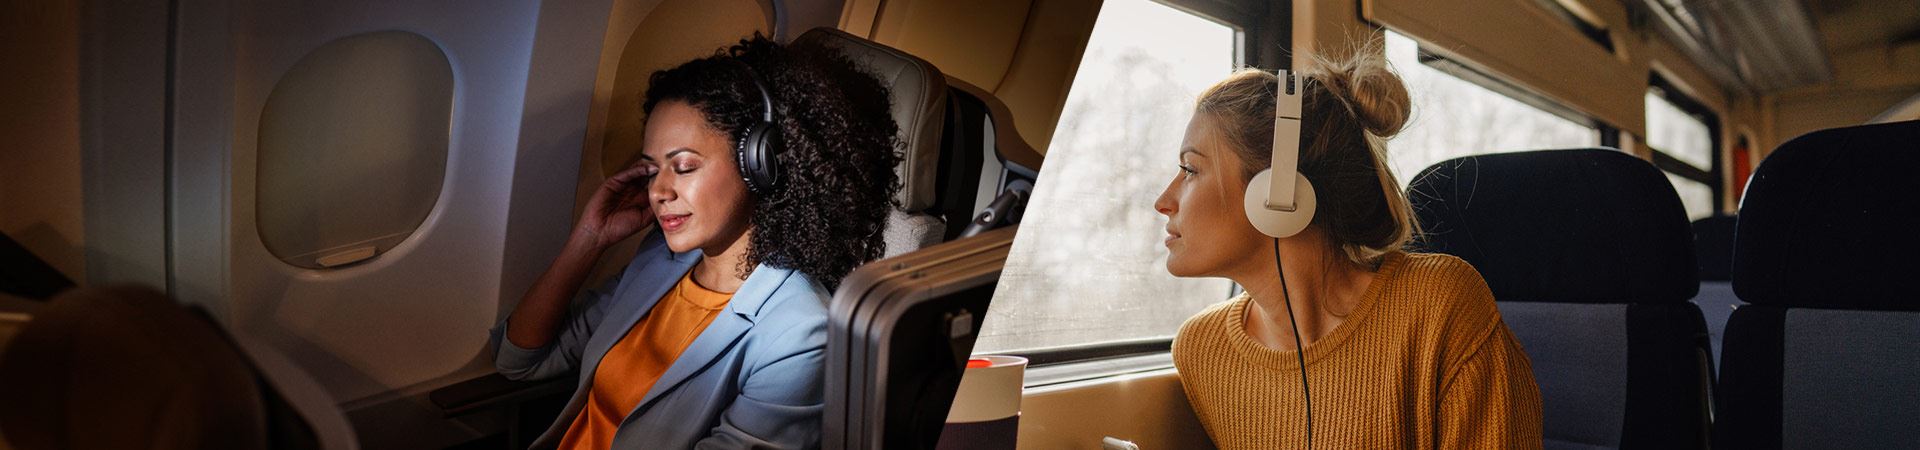 Слева фотография женщины, удобно сидящей в самолете. Справа фотография другой женщины, сидящей в поезде и смотрящей в окно. Обе используют наушники. Атмосфера в самолете и поезде спокойная, других людей не видно. 